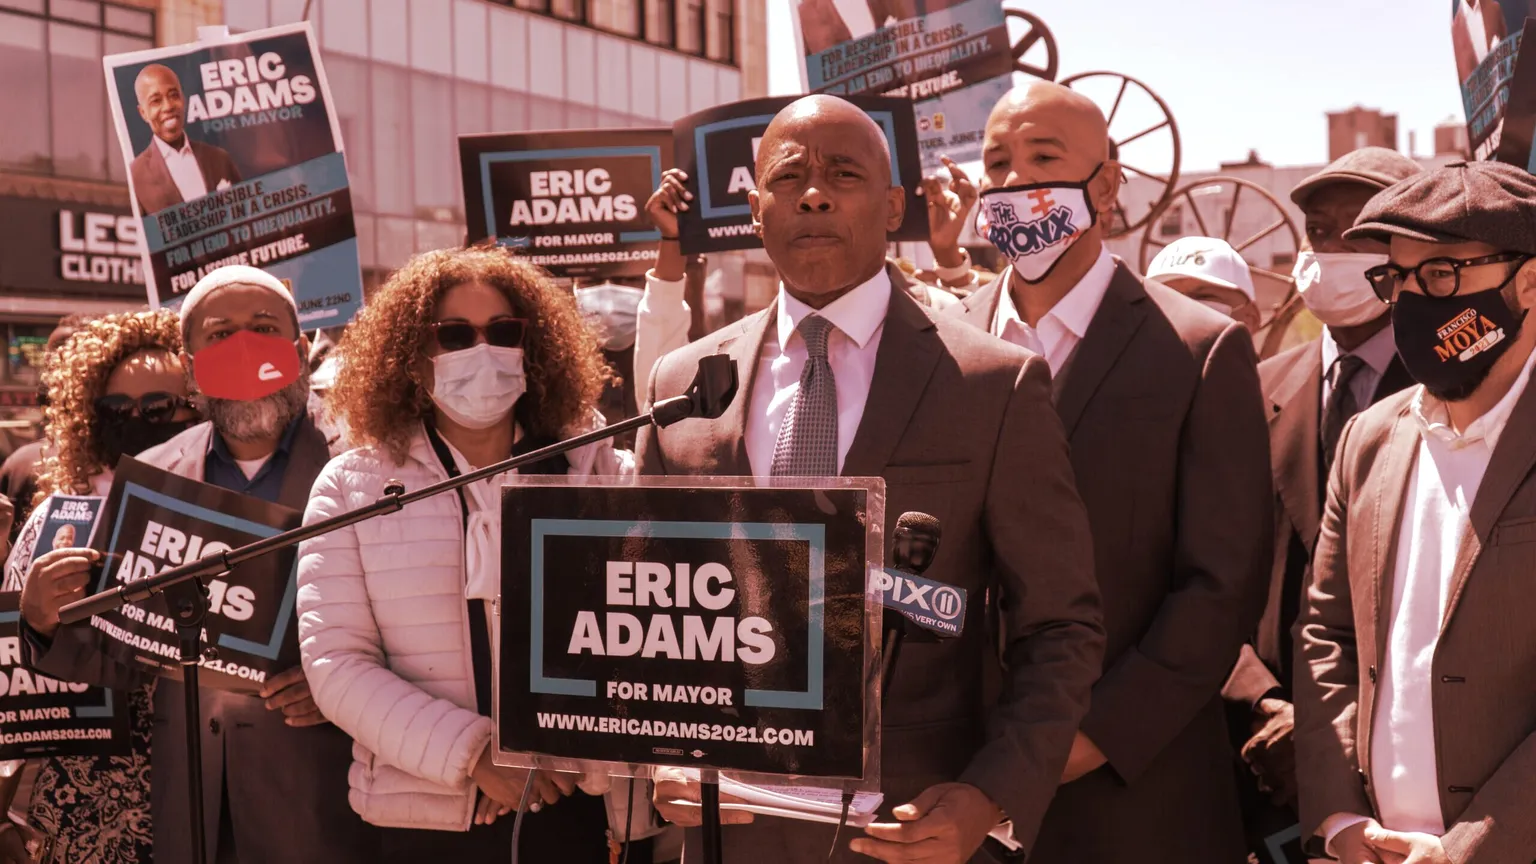 Eric Adams está dispuesto a convertirse en el próximo alcalde de Nueva York. Imagen: Shutterstock